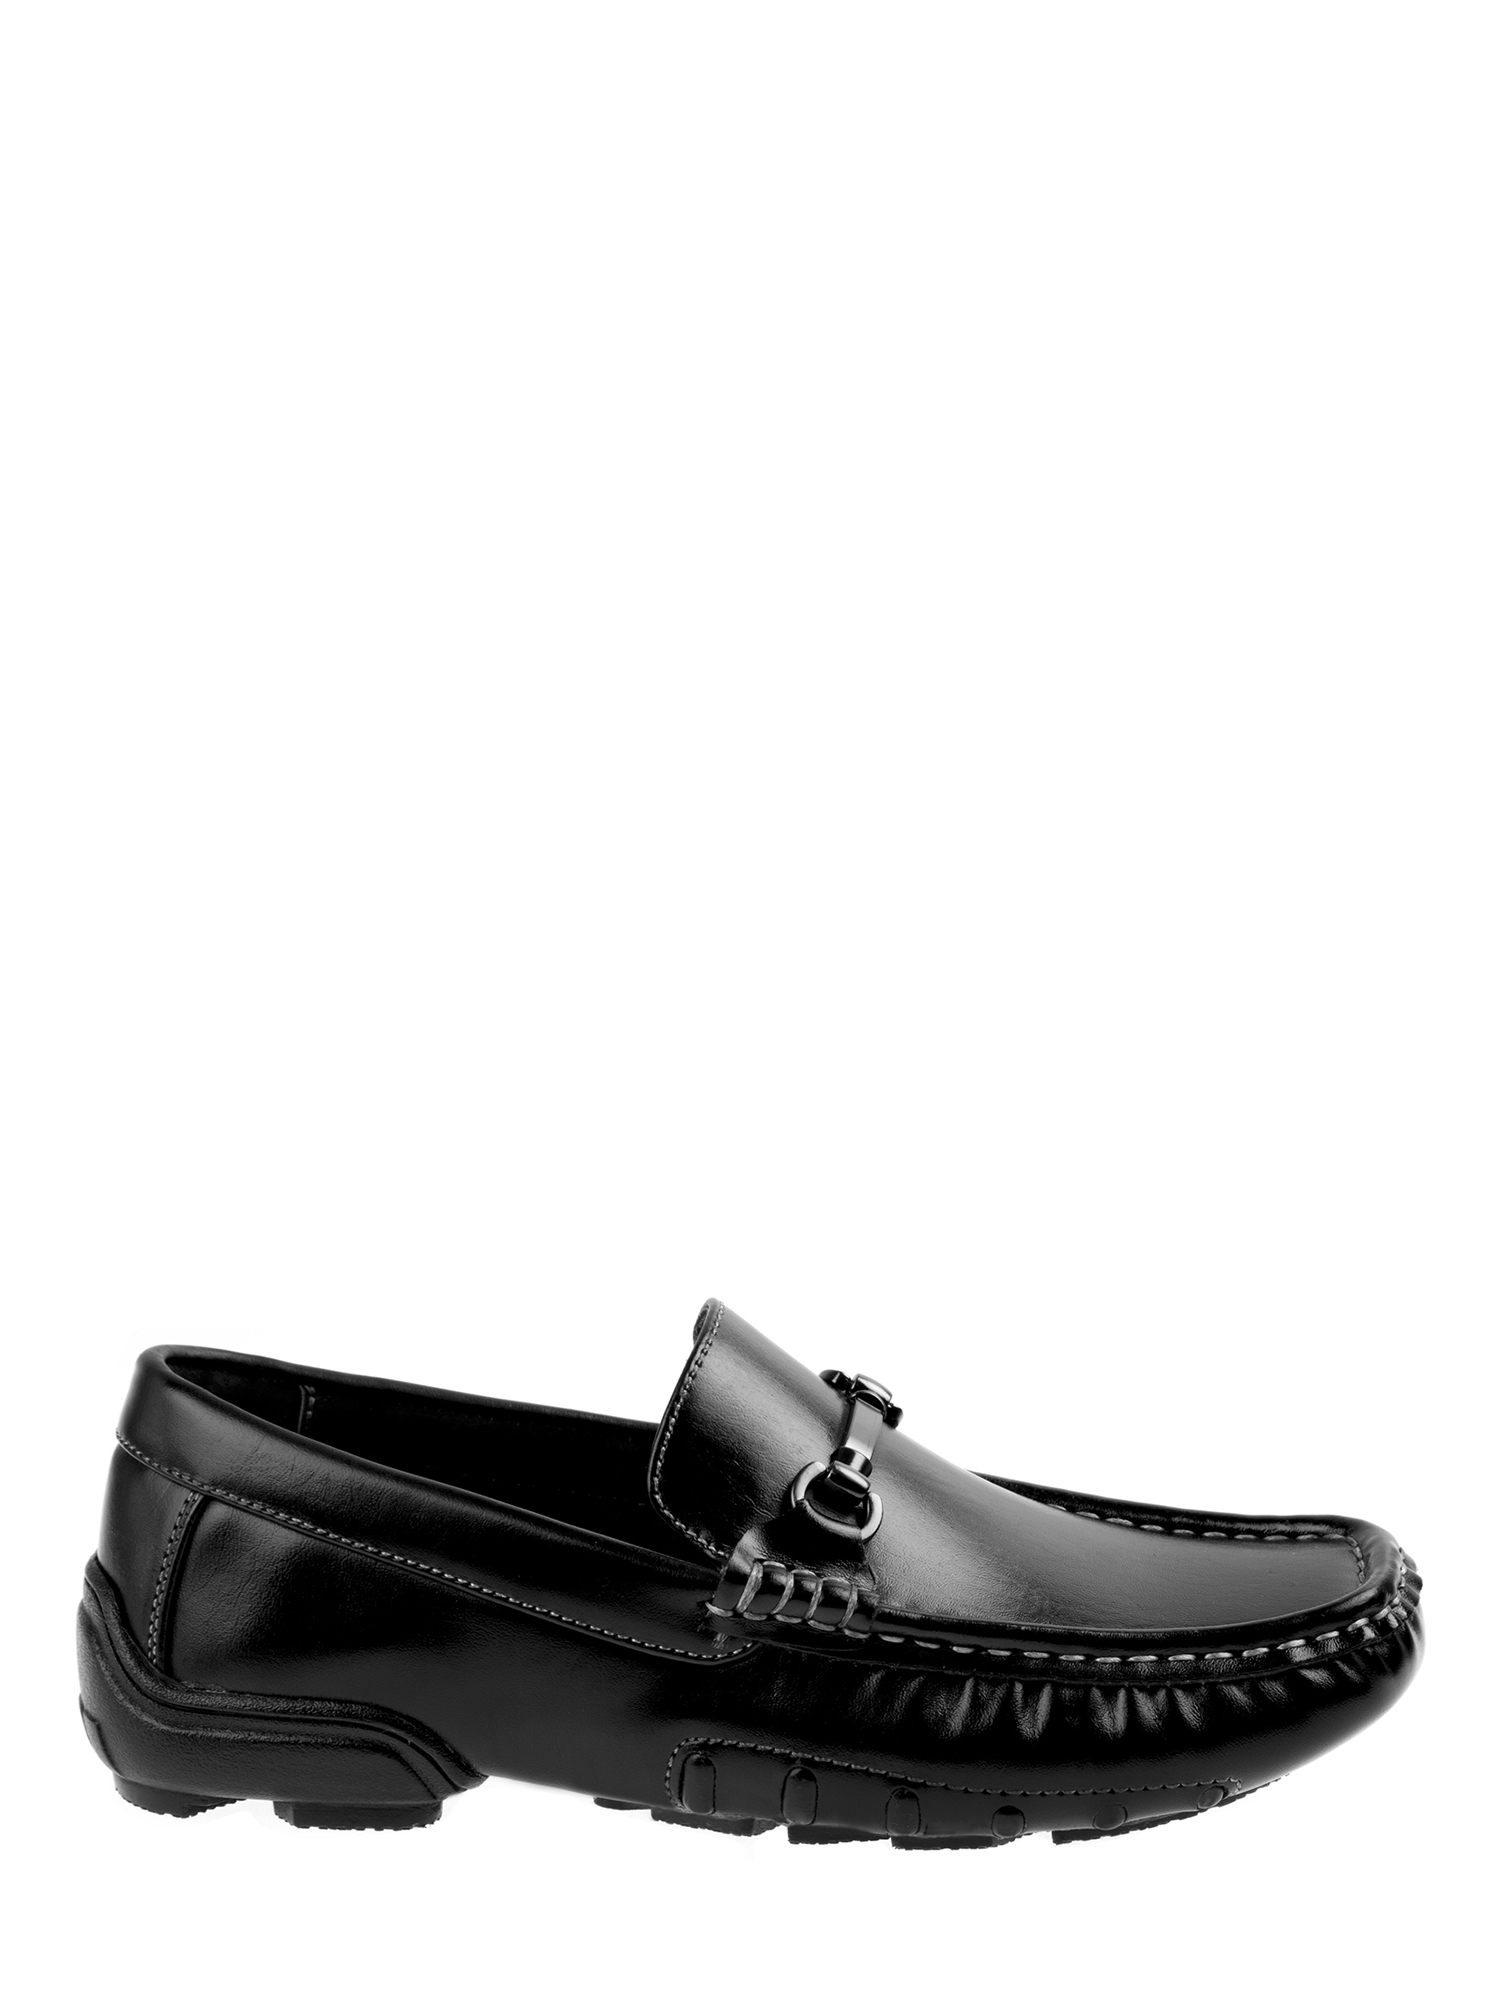 Joseph Allen Boys' Dress Shoes - image 5 of 7